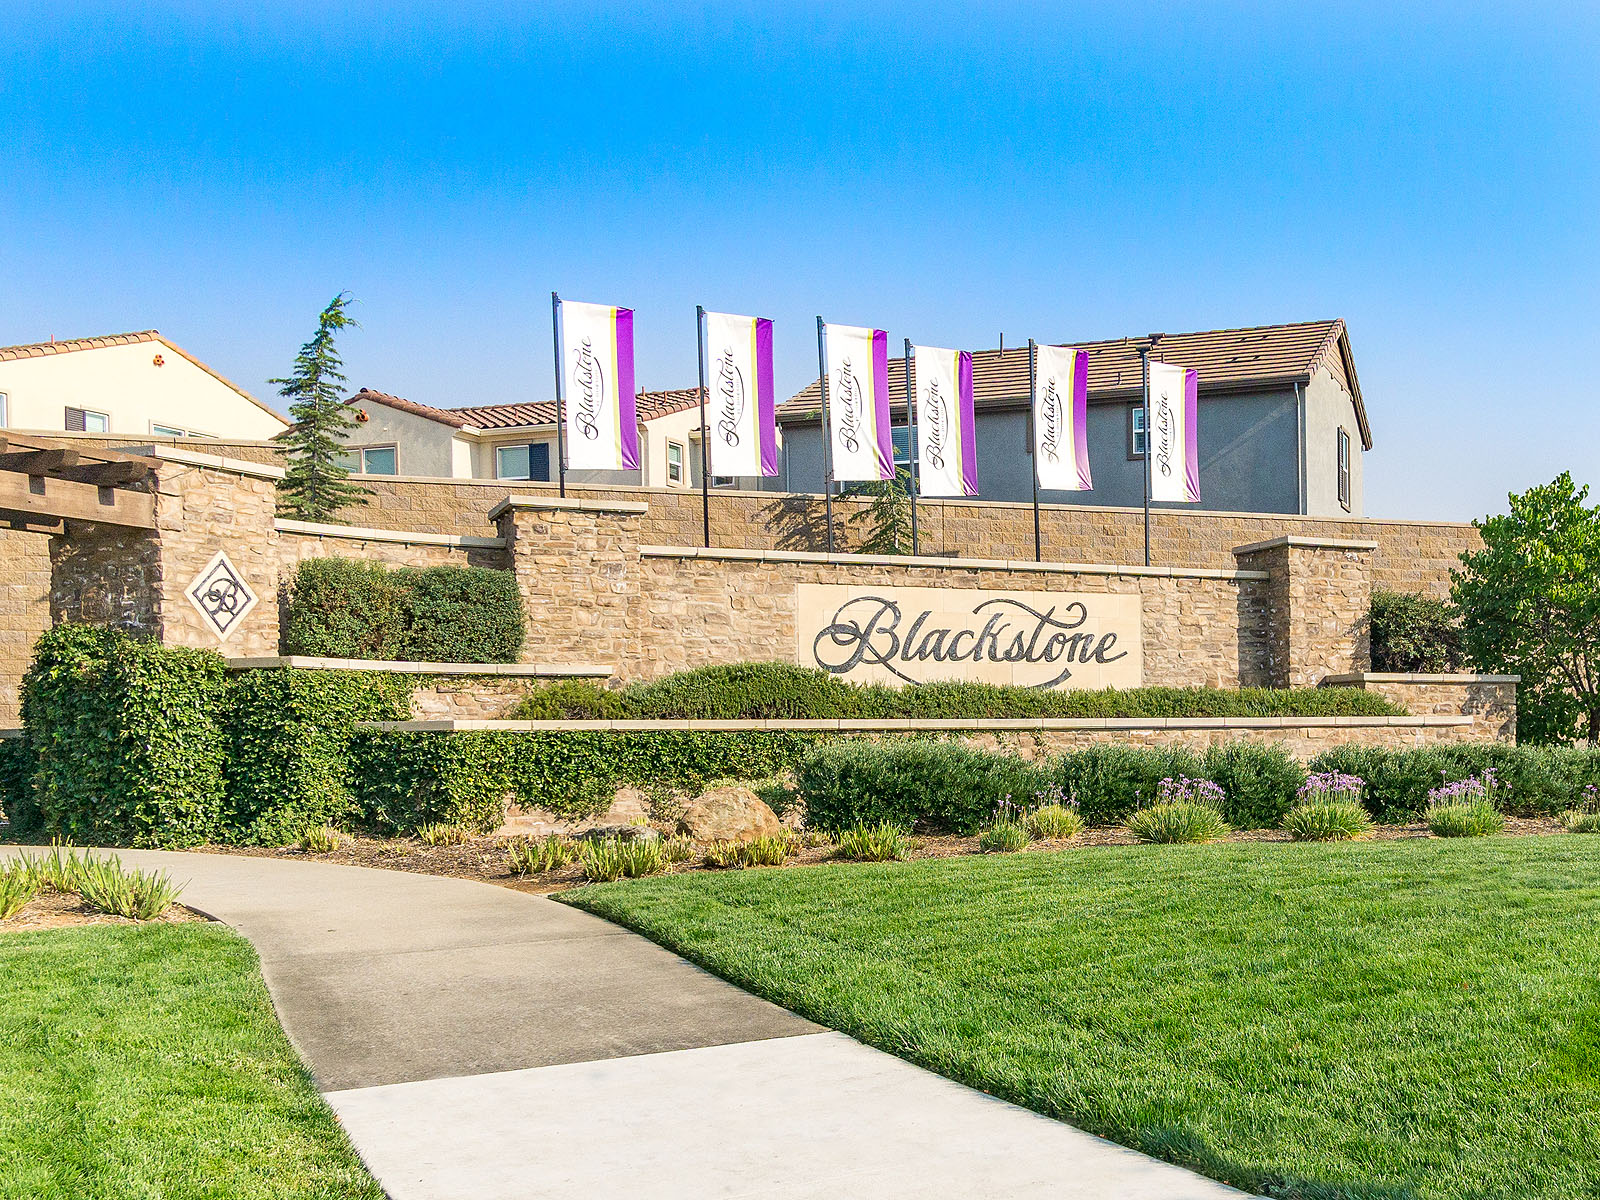 Lewis Real Estate Group - Keller Williams El Dorado Hills | 3907 Park Dr Ste 220, El Dorado Hills, CA, 95762 | +1 (916) 805-3885